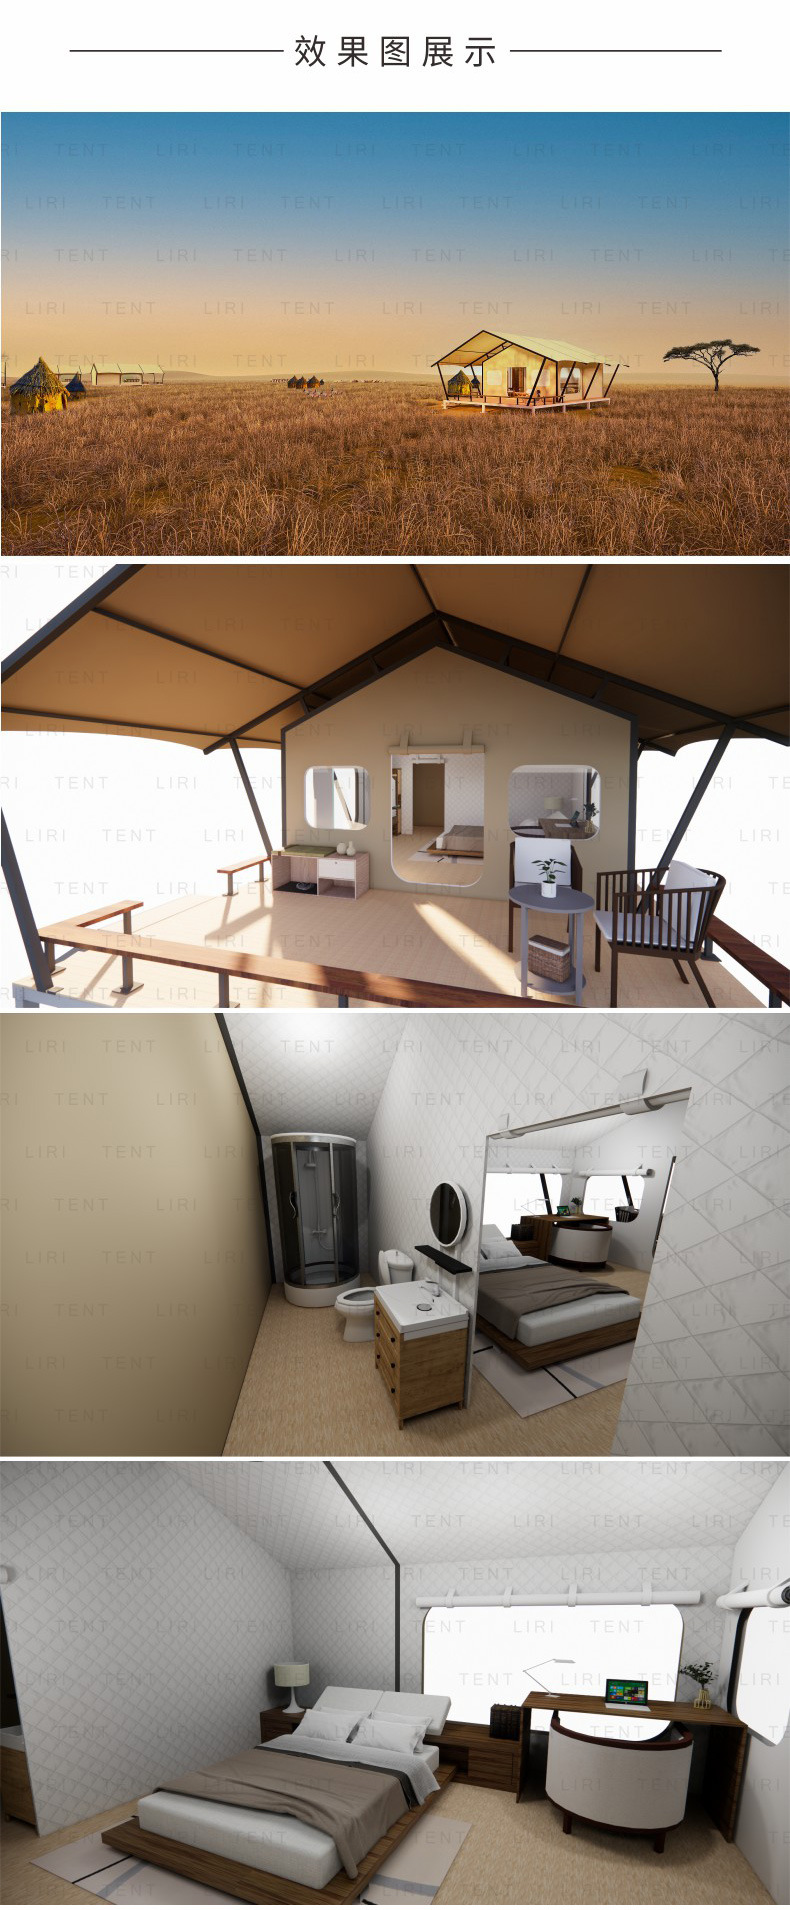 Outdoor outdoor tent waterproof luxury nomadic hotel tent wild luxury vacation homestay tent aluminum alloy